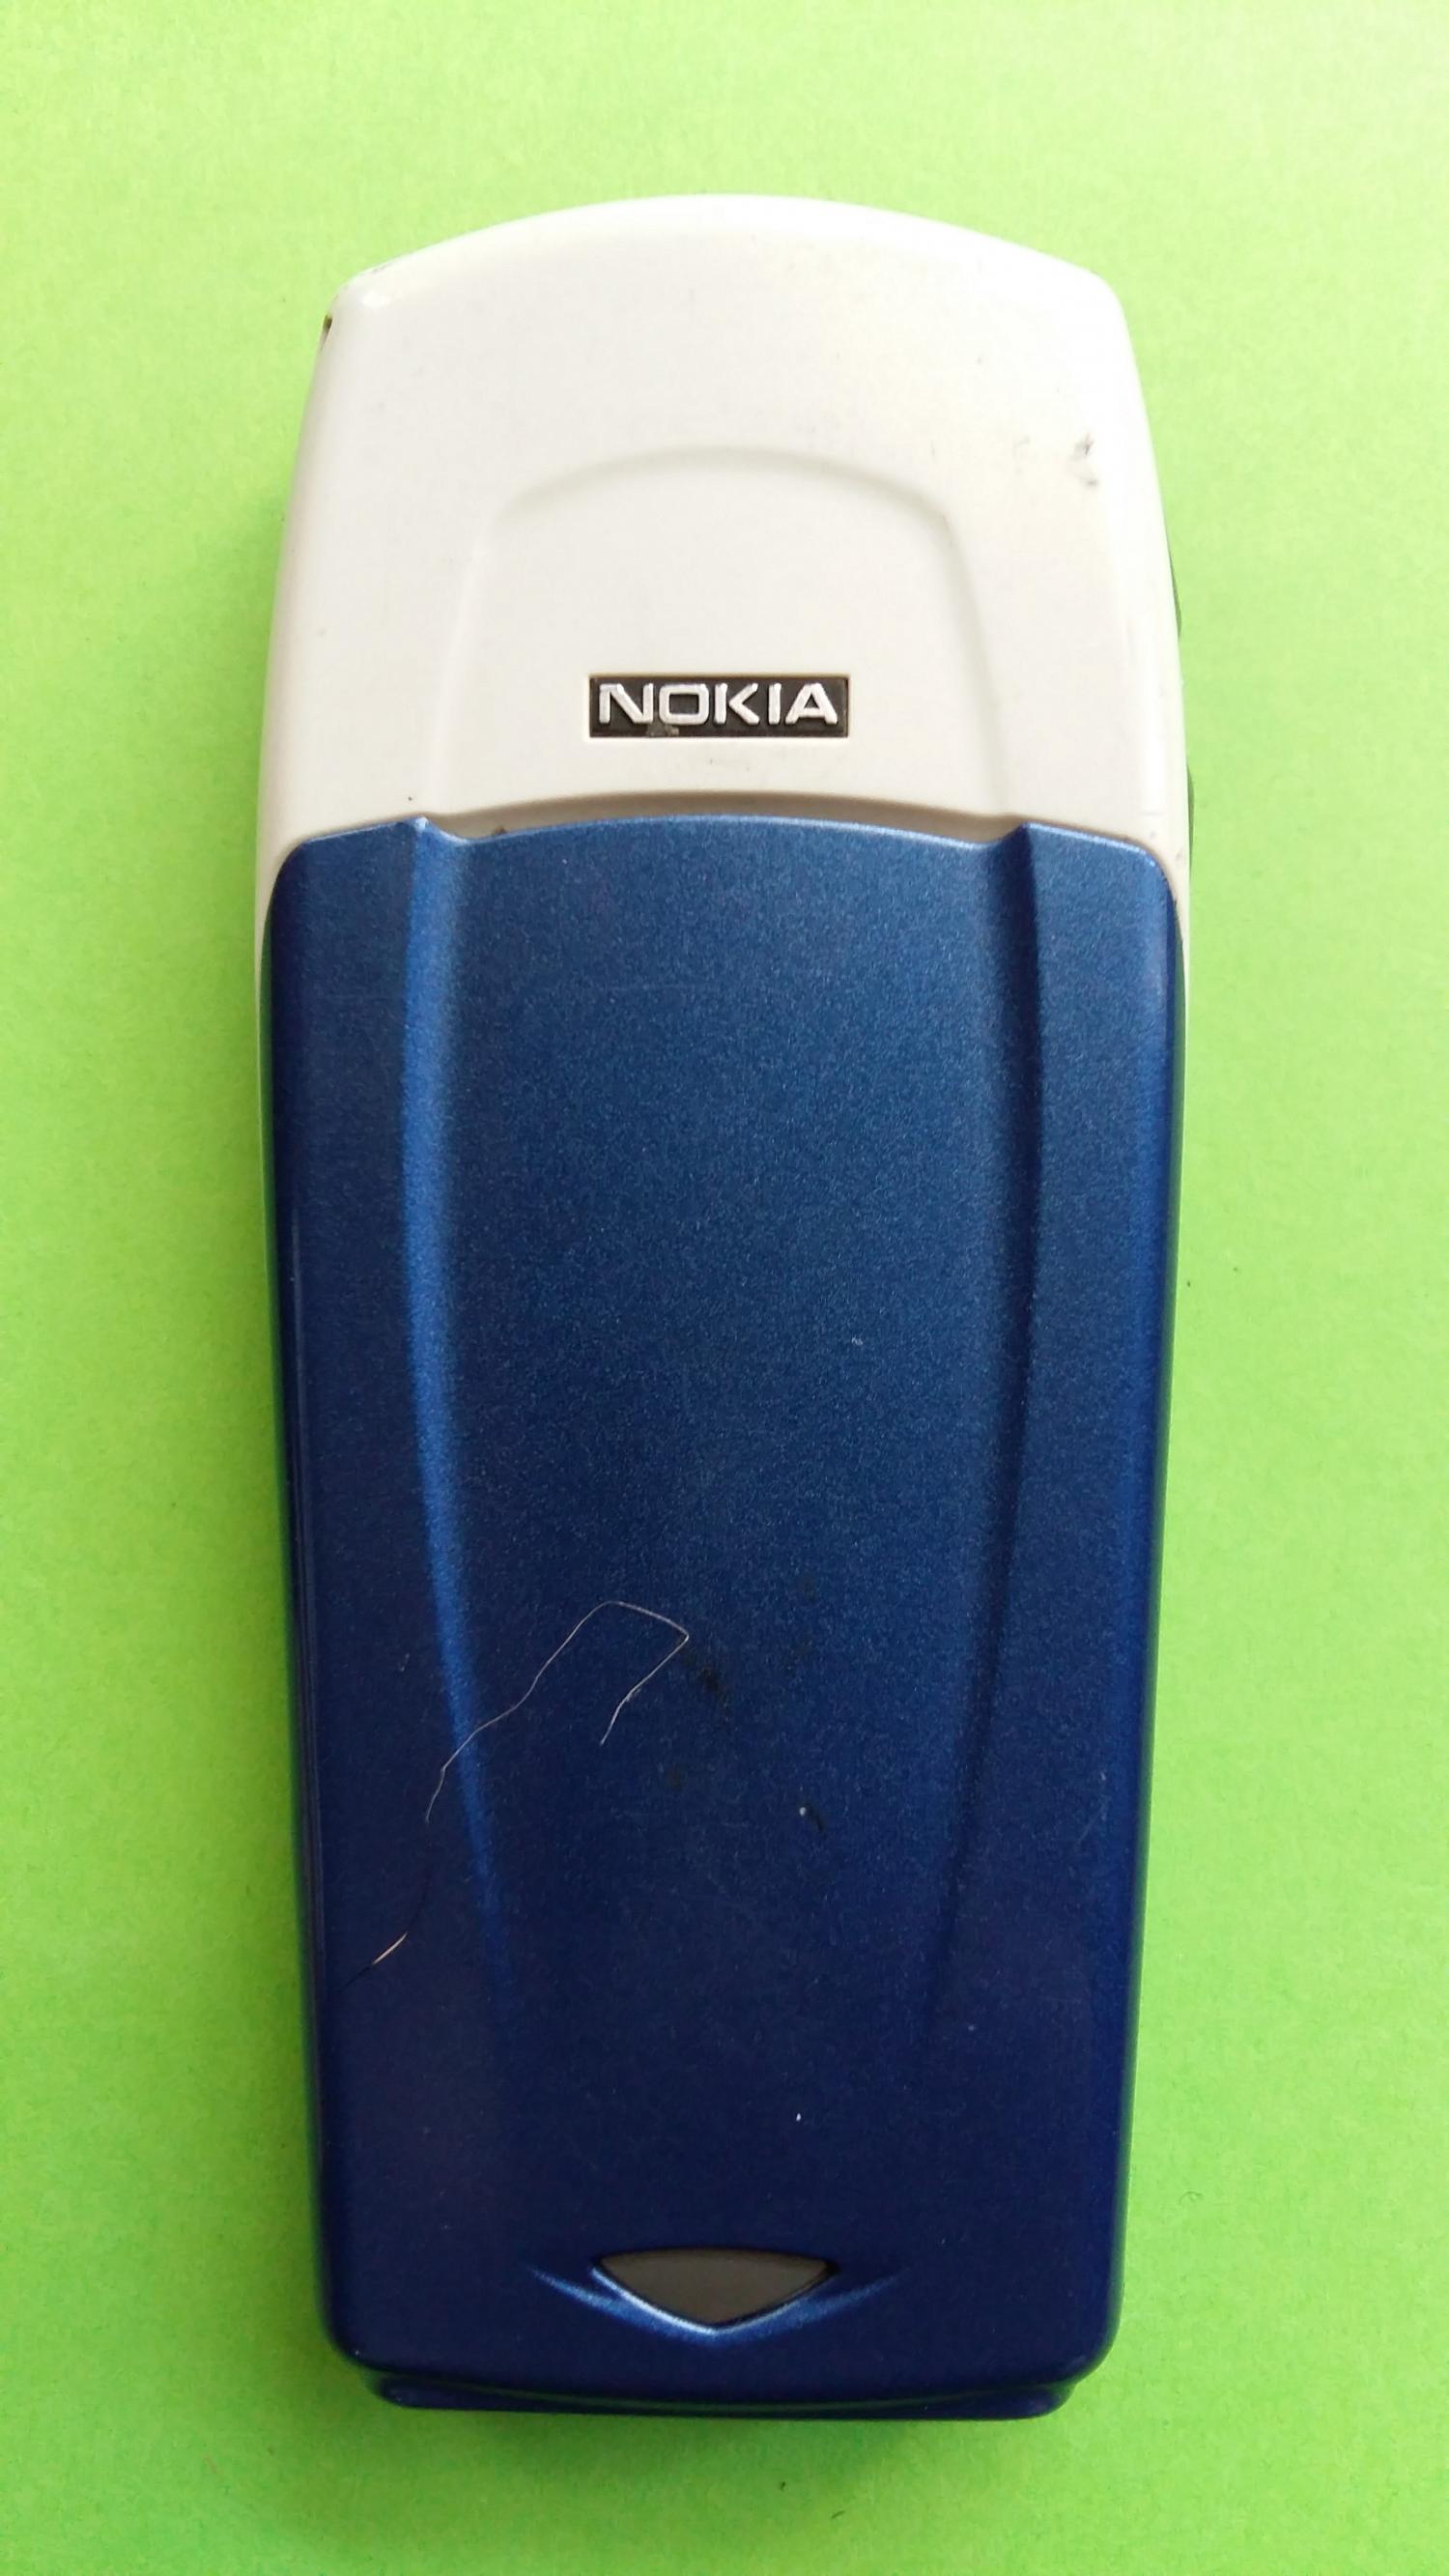 image-7328946-Nokia 6100 (4)2.jpg